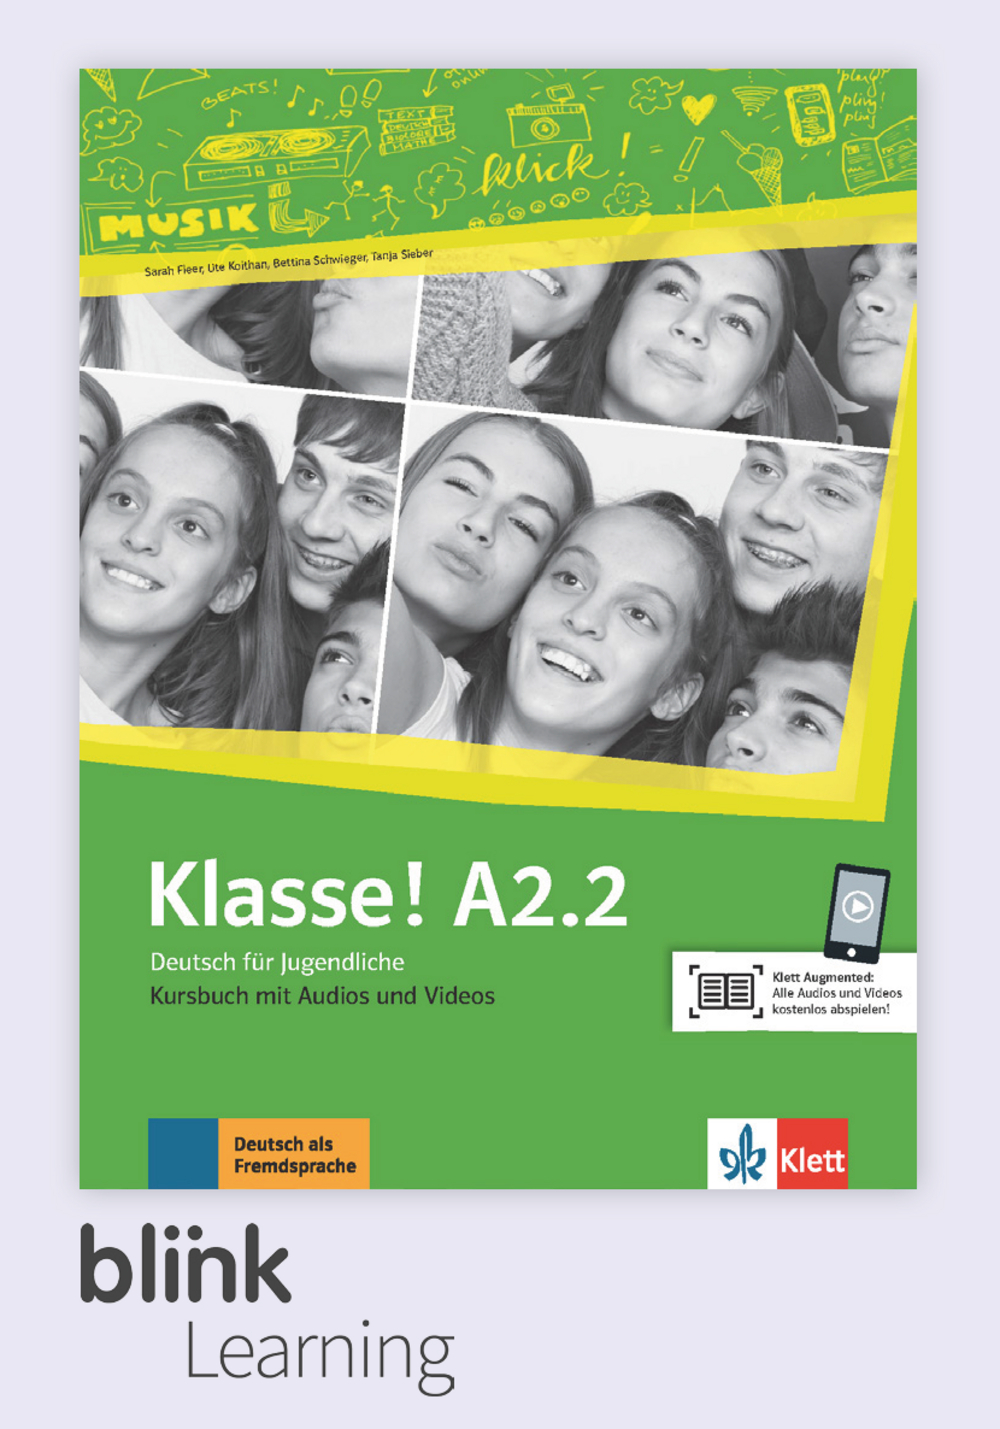 Klasse! A2.2 Digital Kursbuch fur Lernende / Цифровой учебник для ученика